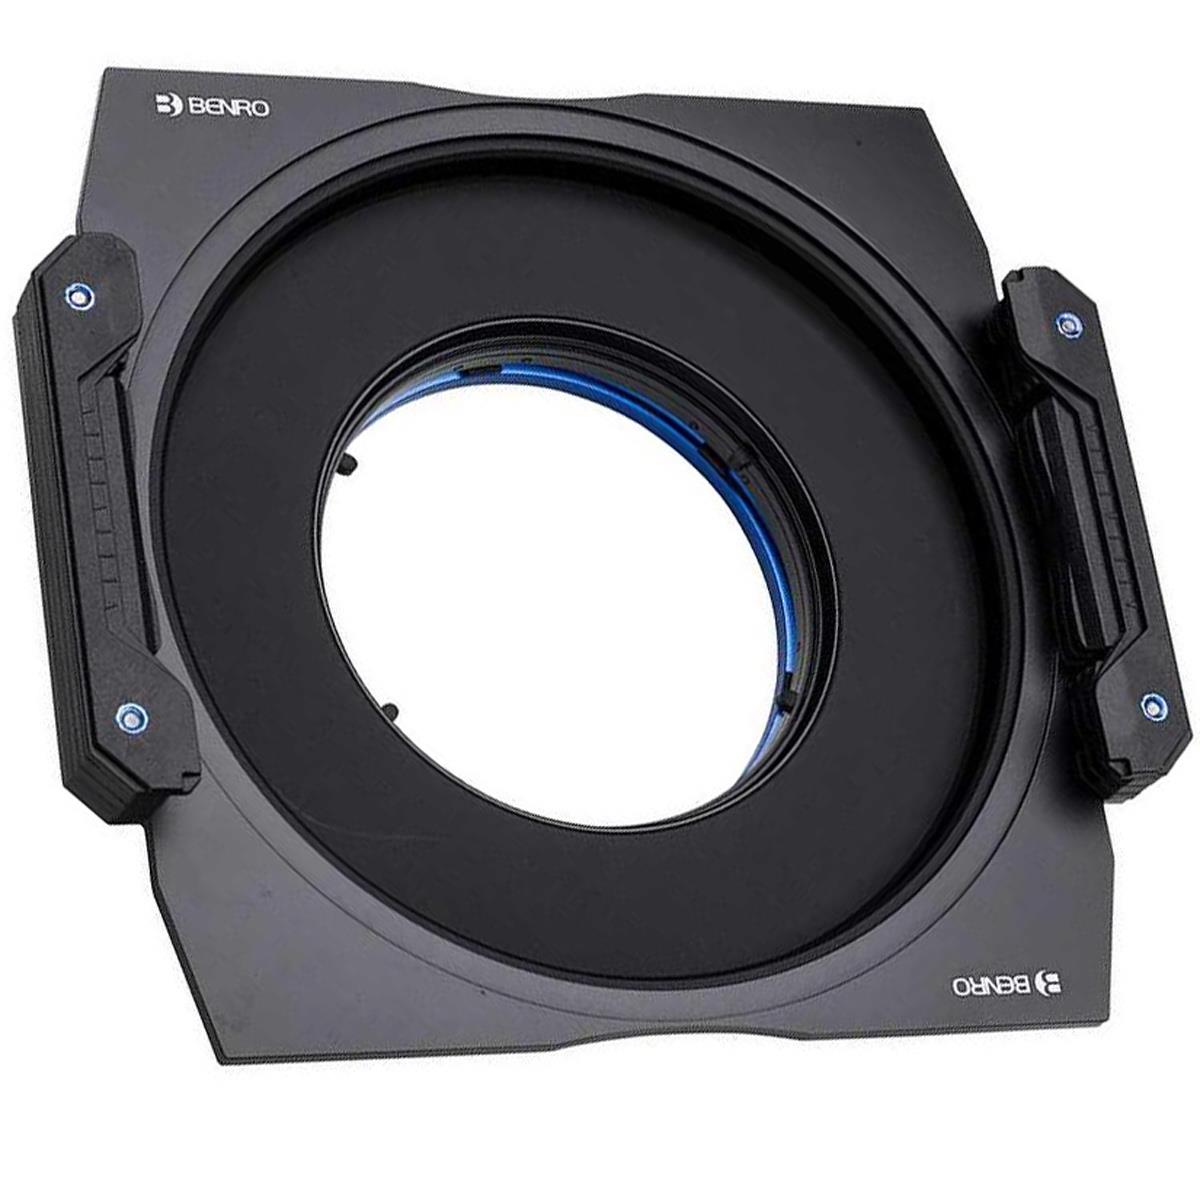 Image of Benro Master Series 150mm Filter Holder Set for Canon EF 14mmf/2.8L II USM Lens